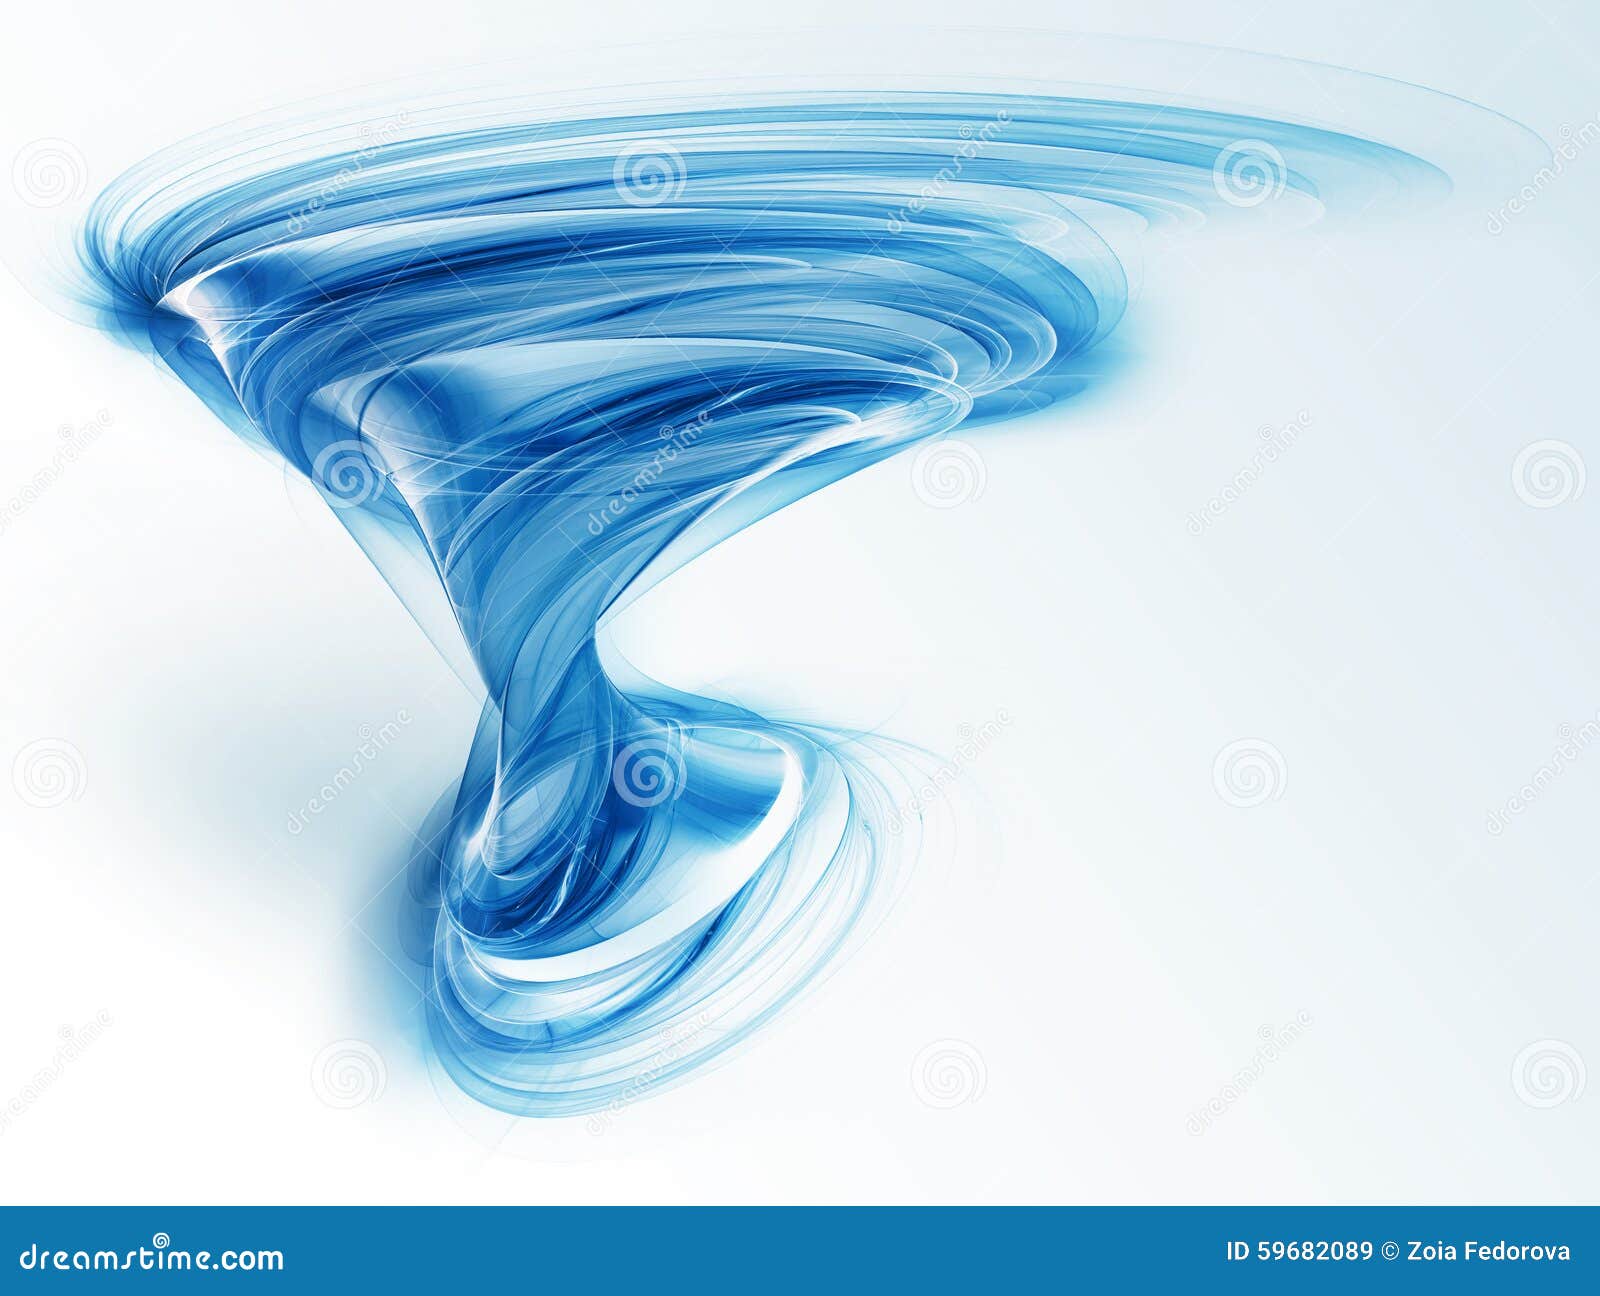 Blue tornado stock illustration. Illustration of black - 59682089